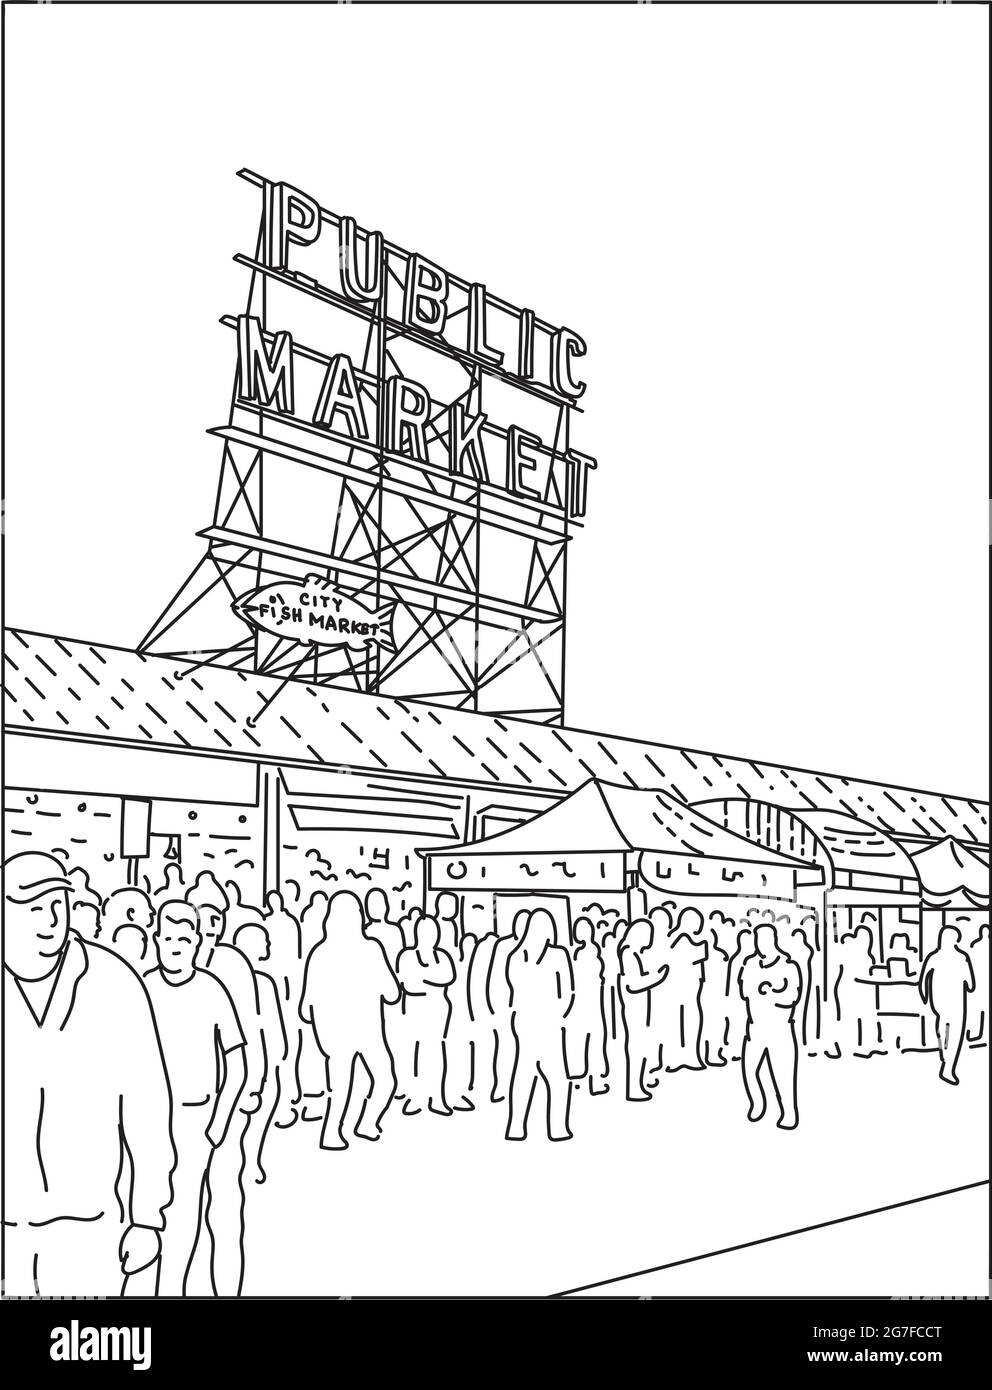 Illustrazione monolinea di Pike Place Market, un mercato pubblico a Seattle, Washington, il più antico mercato agricolo pubblico gestito in continuazione negli Stati Uniti i Illustrazione Vettoriale